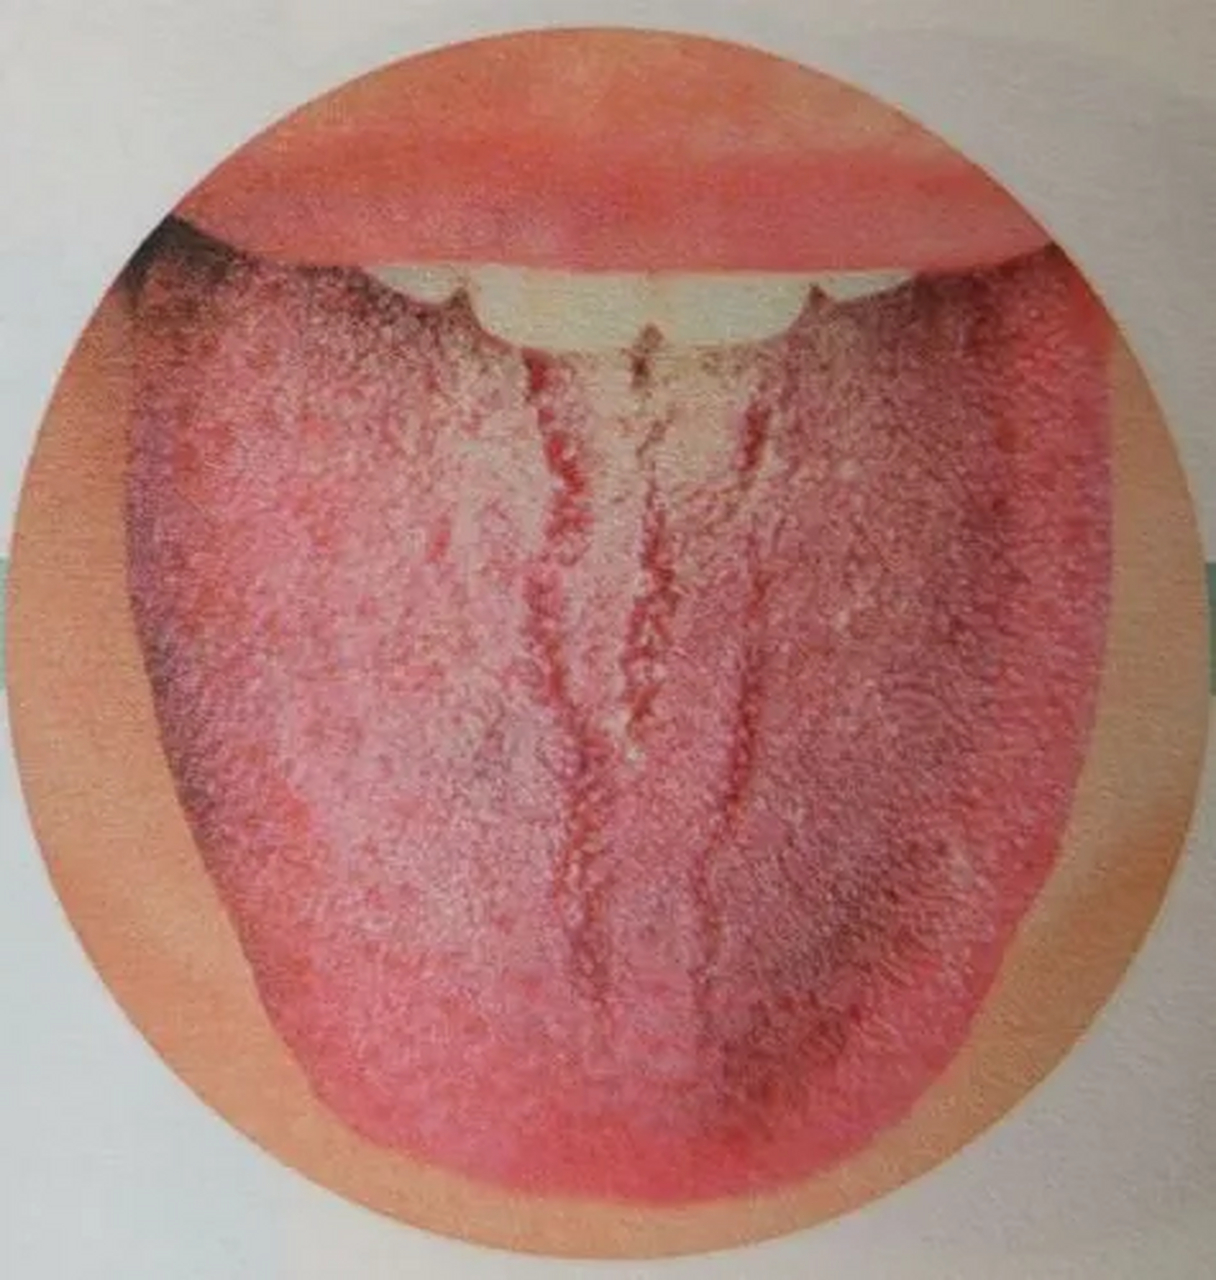 舌头有裂纹图解图片